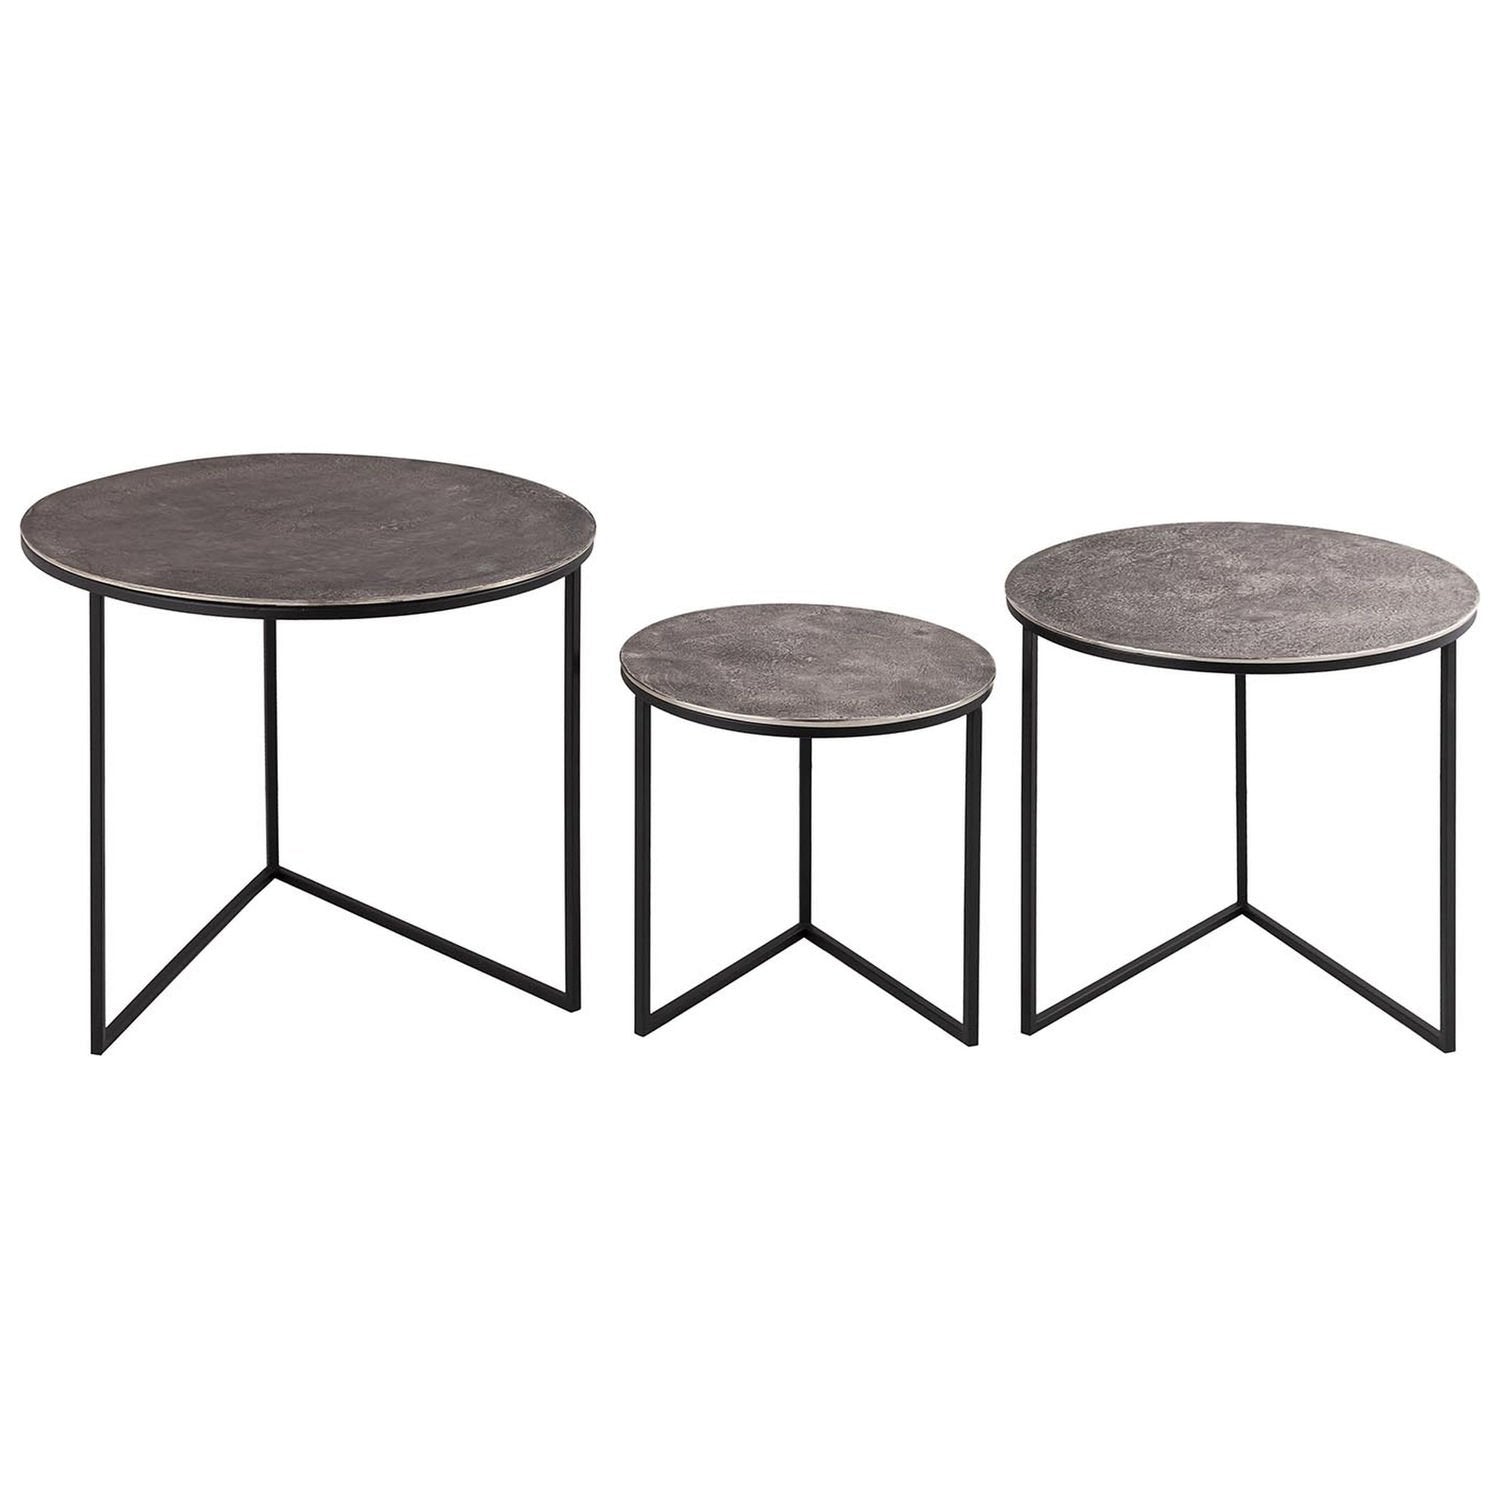 Set of Three Industrial Cast Aluminium Round Tables